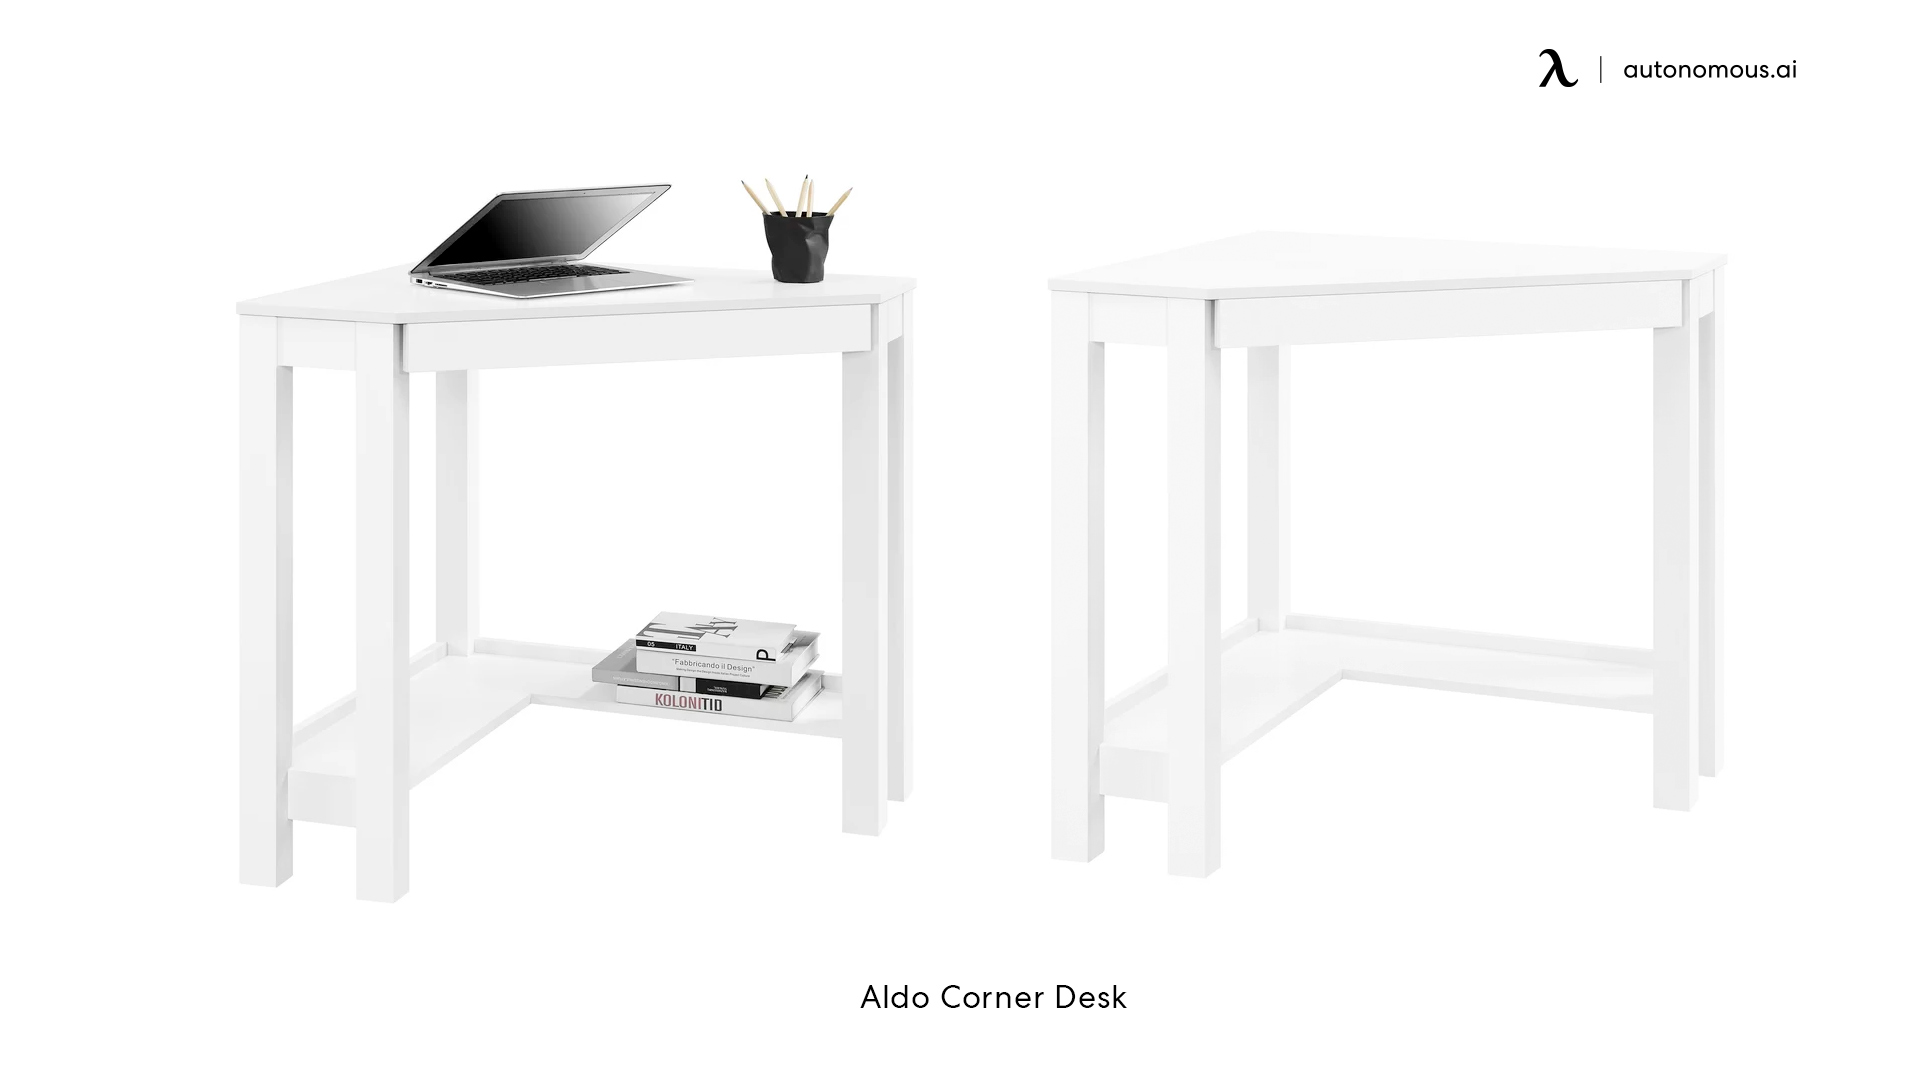 Aldo Corner Desk in Canada